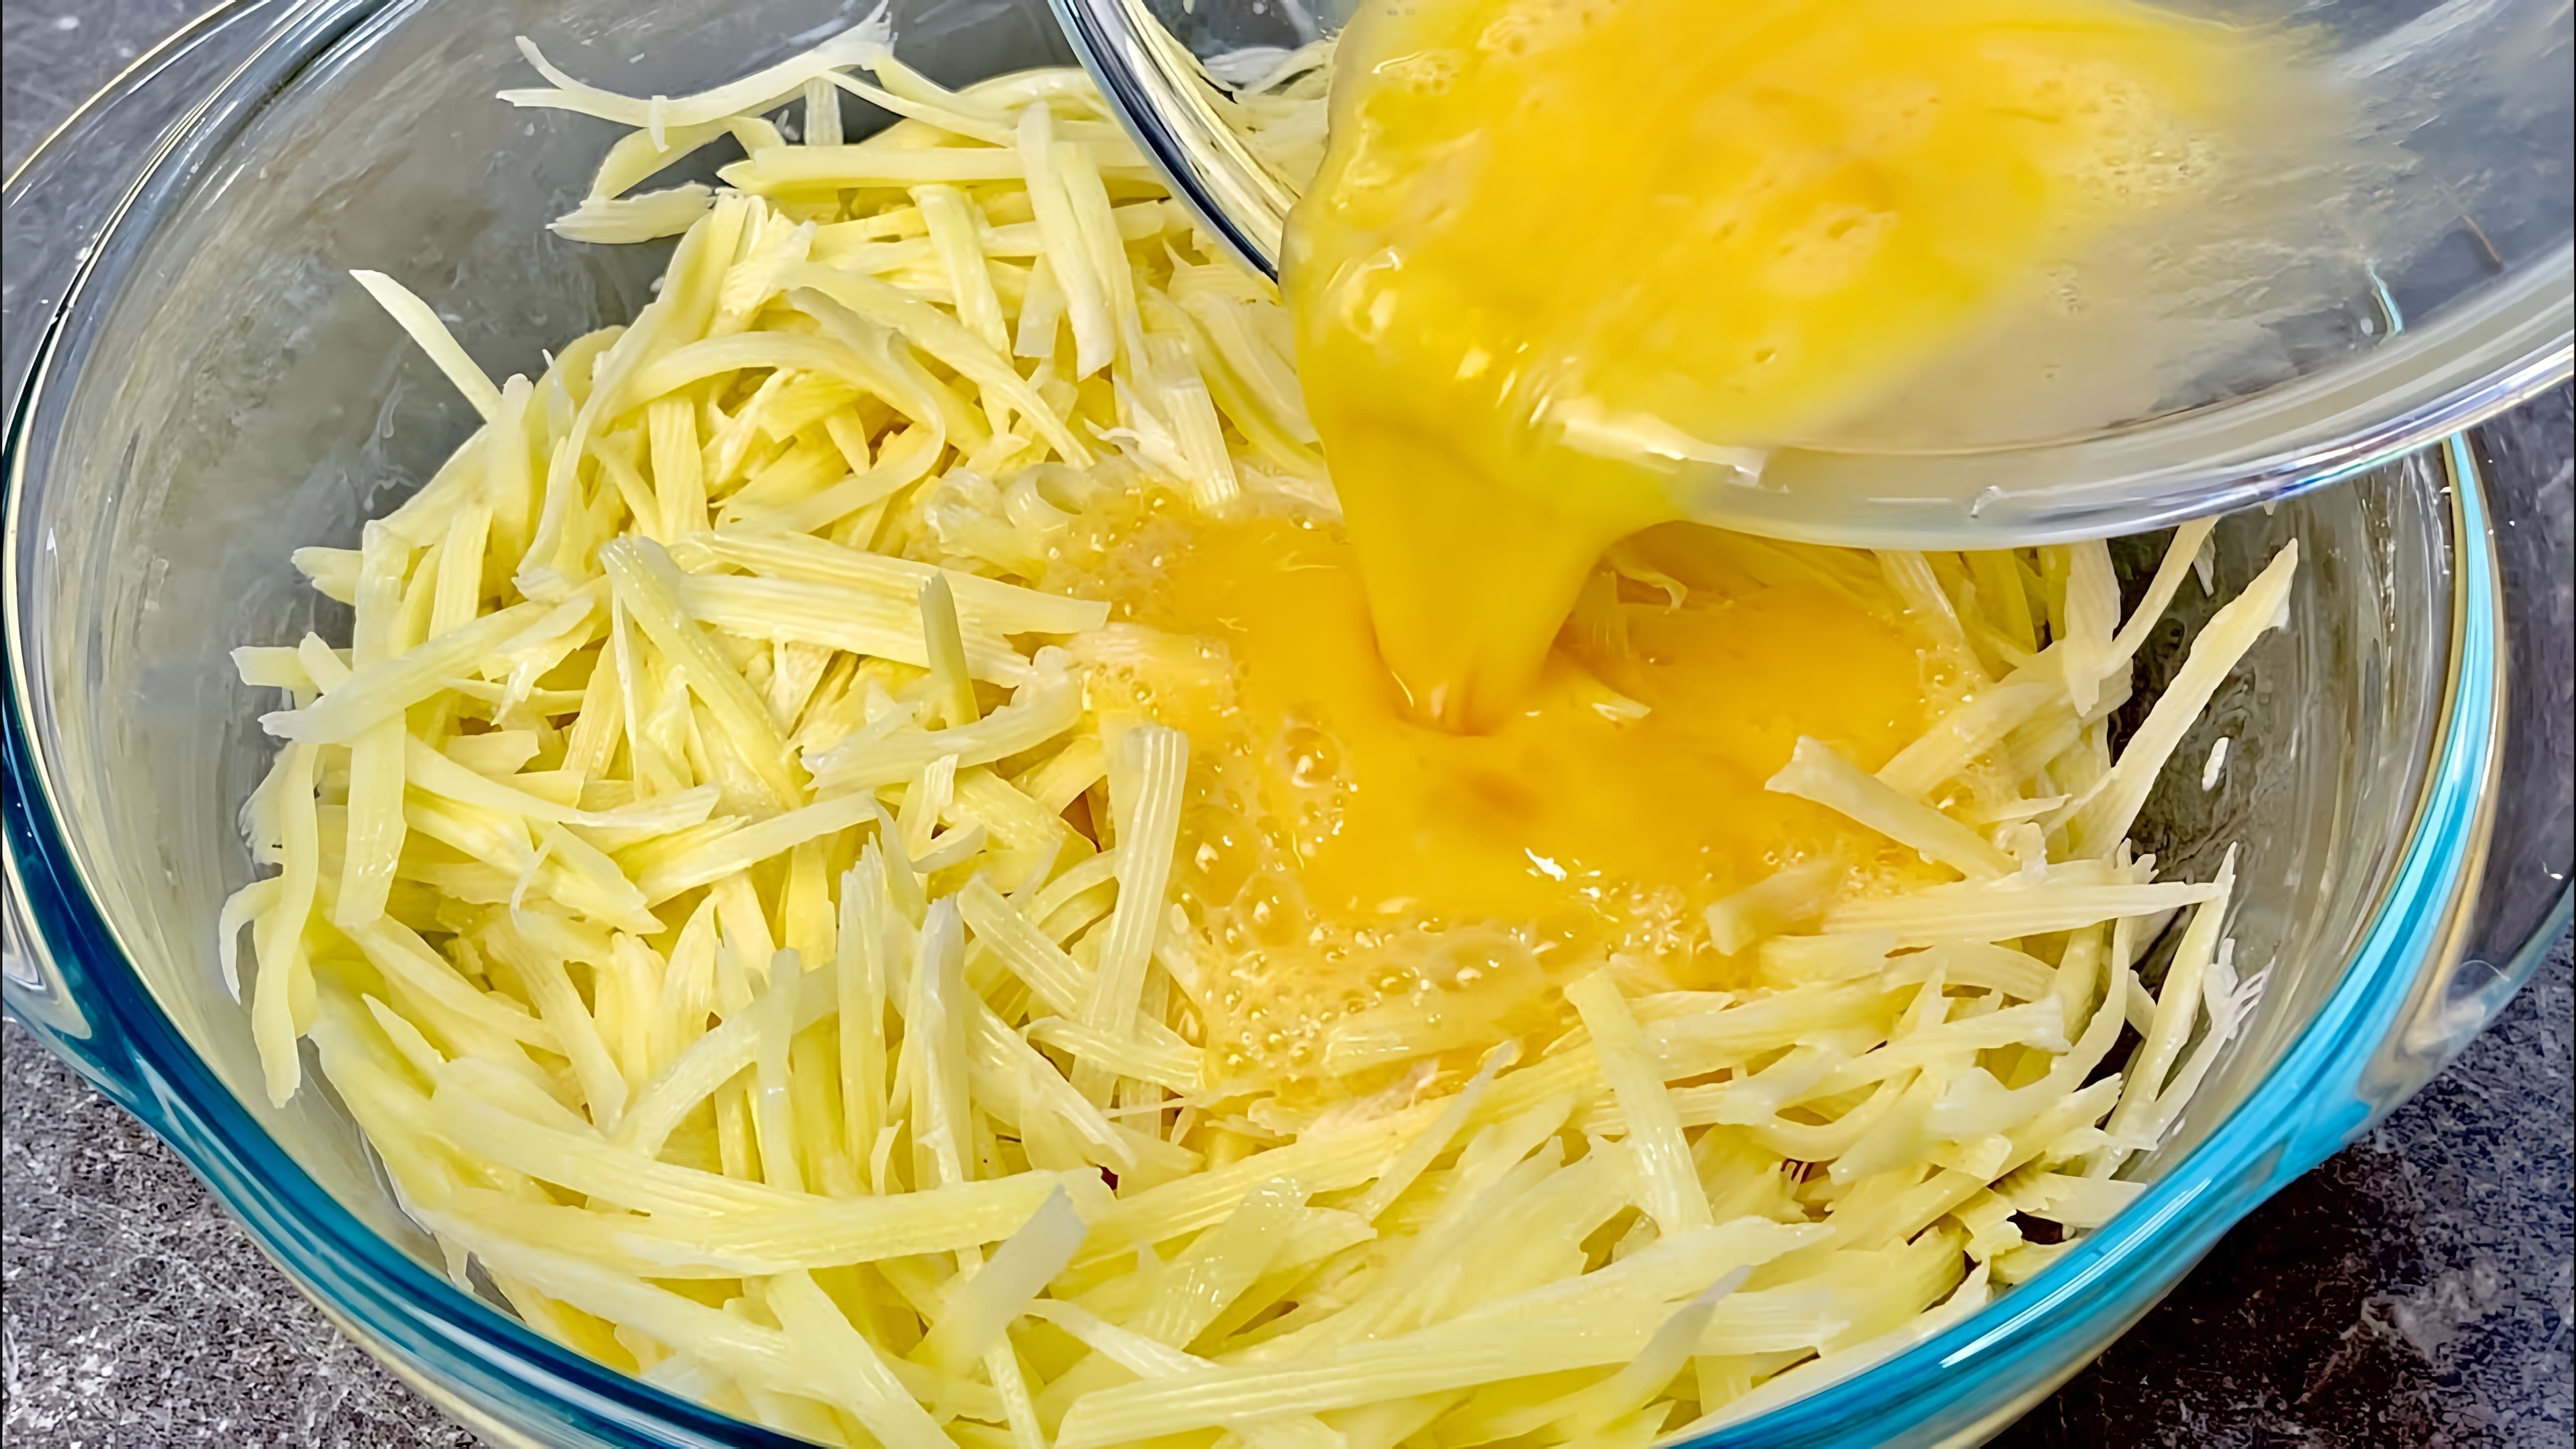 В этом видео демонстрируется процесс приготовления картофельных оладий с яйцами и сыром